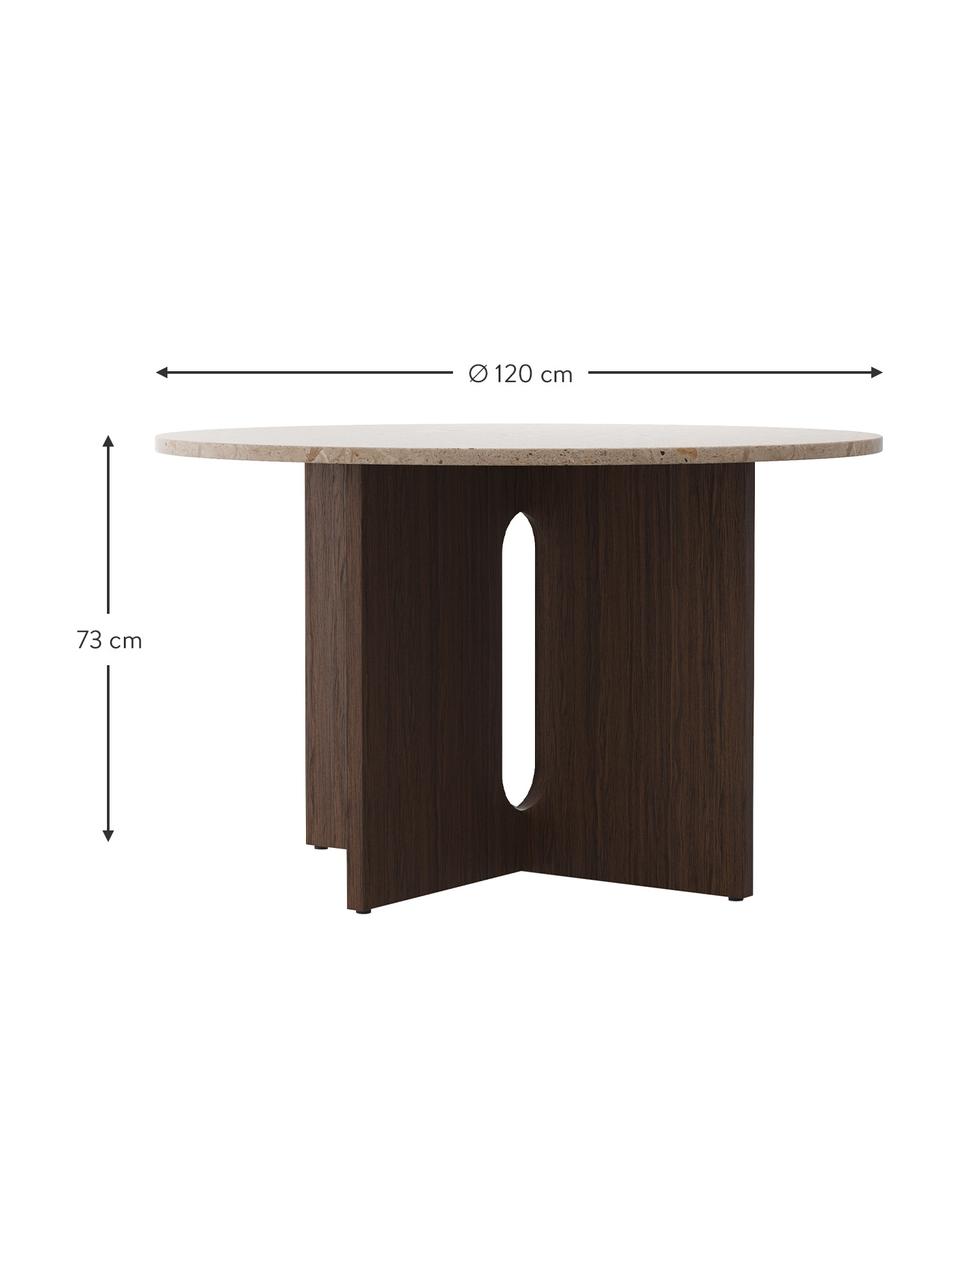 Kulatý jídelní stůl s deskou stolu z pískovce Androgyne, Ø 120 cm, Tmavé dřevo, pískovec, Ø 120 cm, V 73 cm